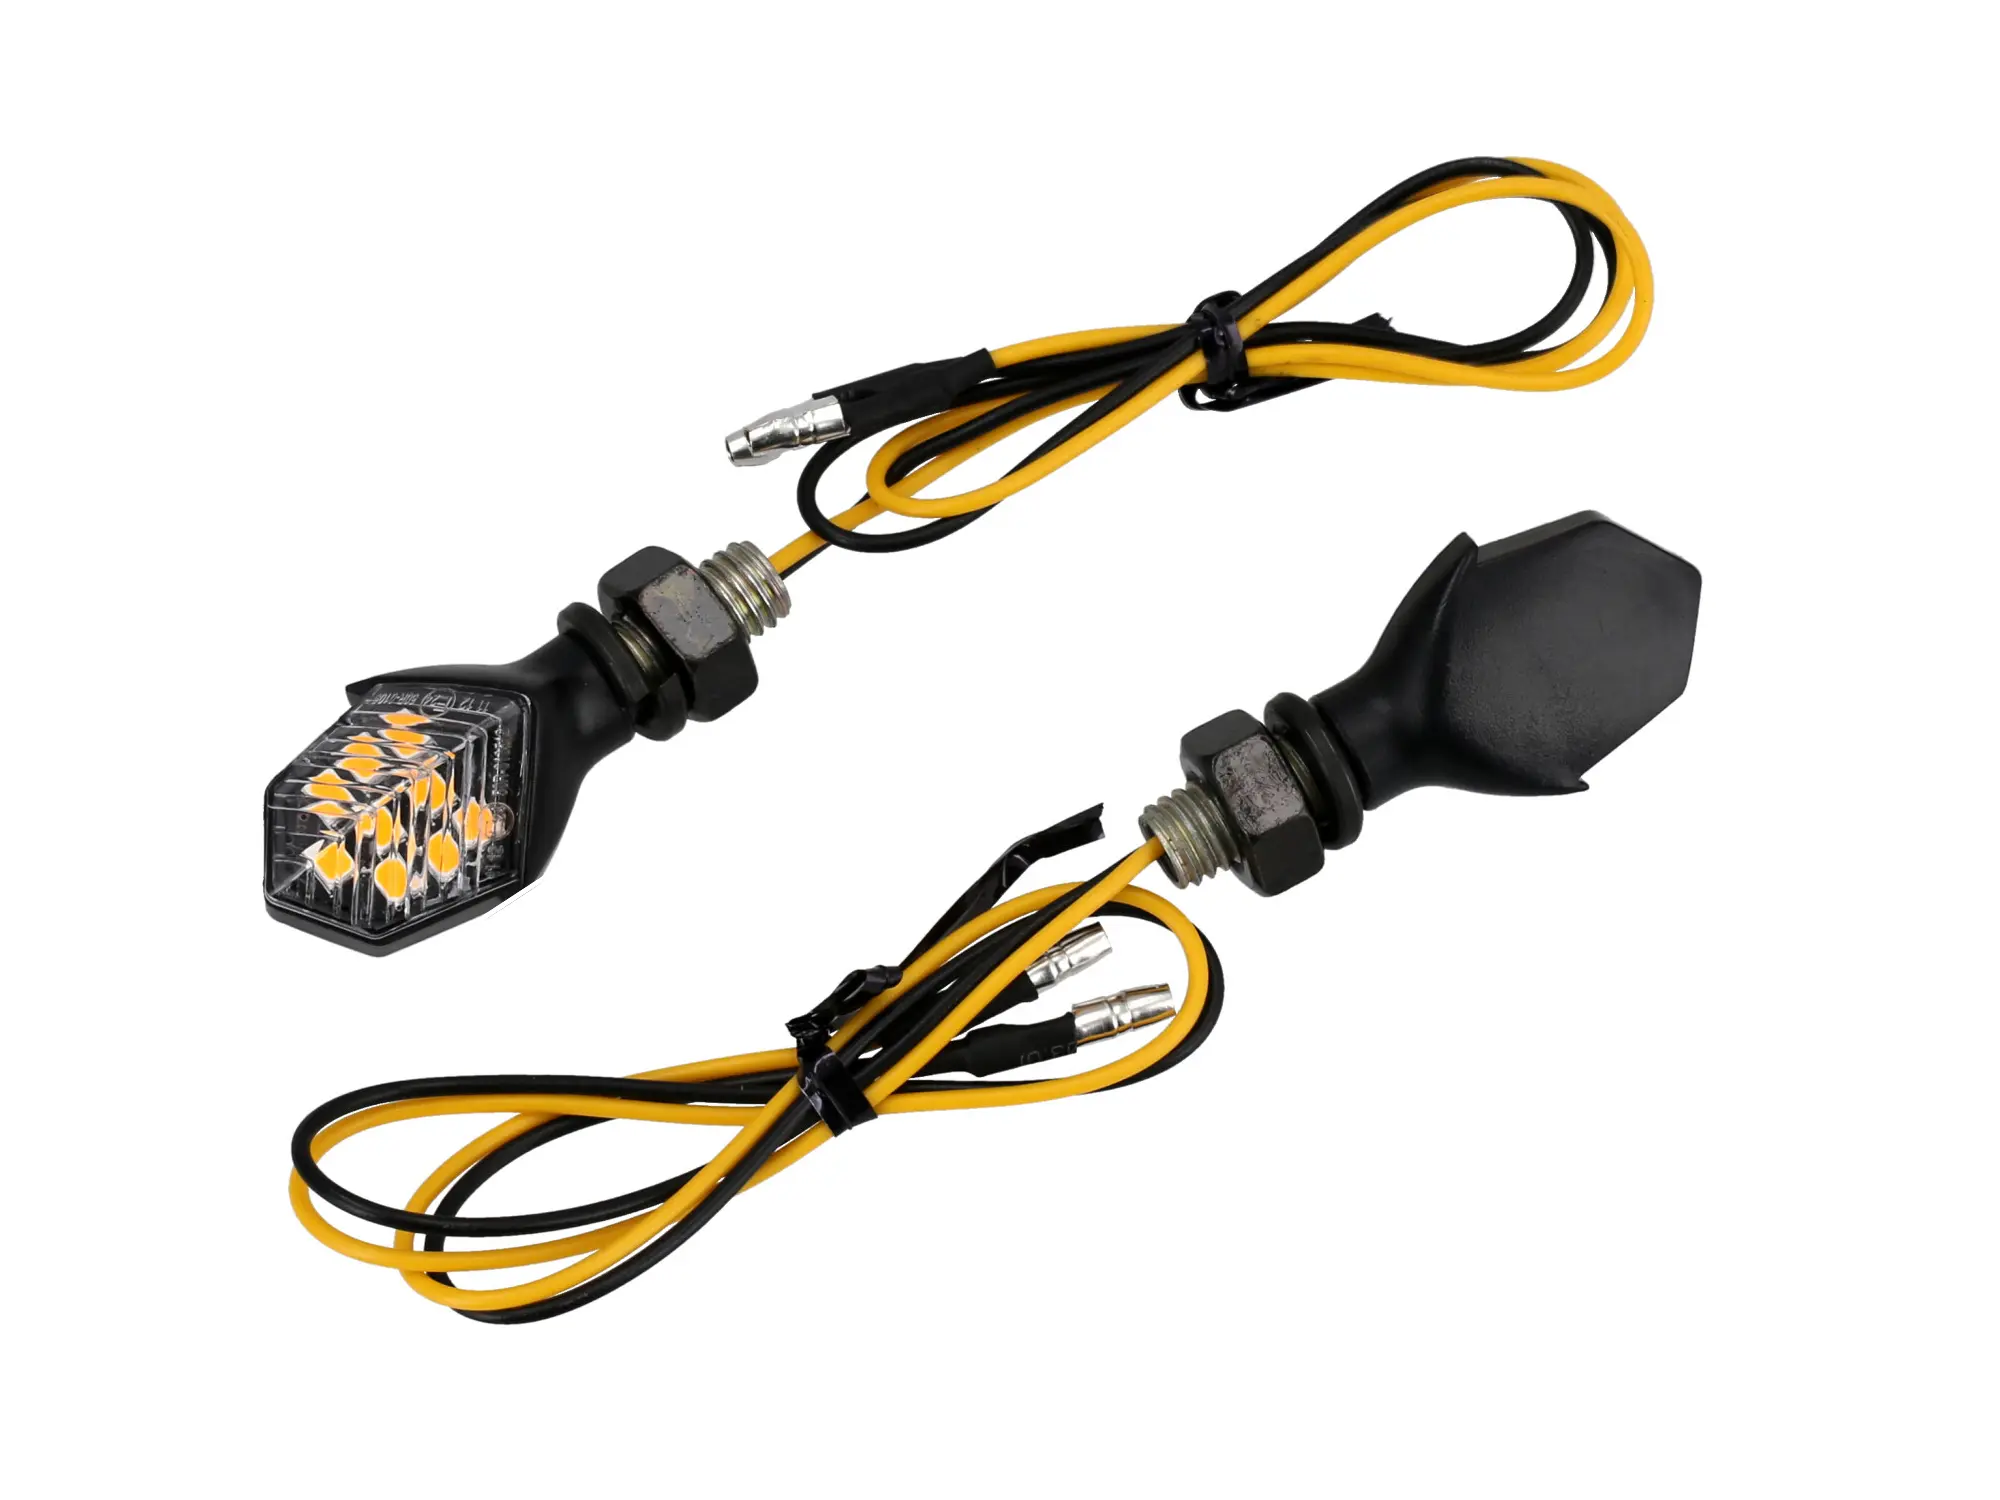 Set: 2 Mini-Blinker 12V LED in Mattschwarz mit Klarglas, E-geprüft - für Moped und Motorrad, Art.-Nr.: 10076890 - Bild 1